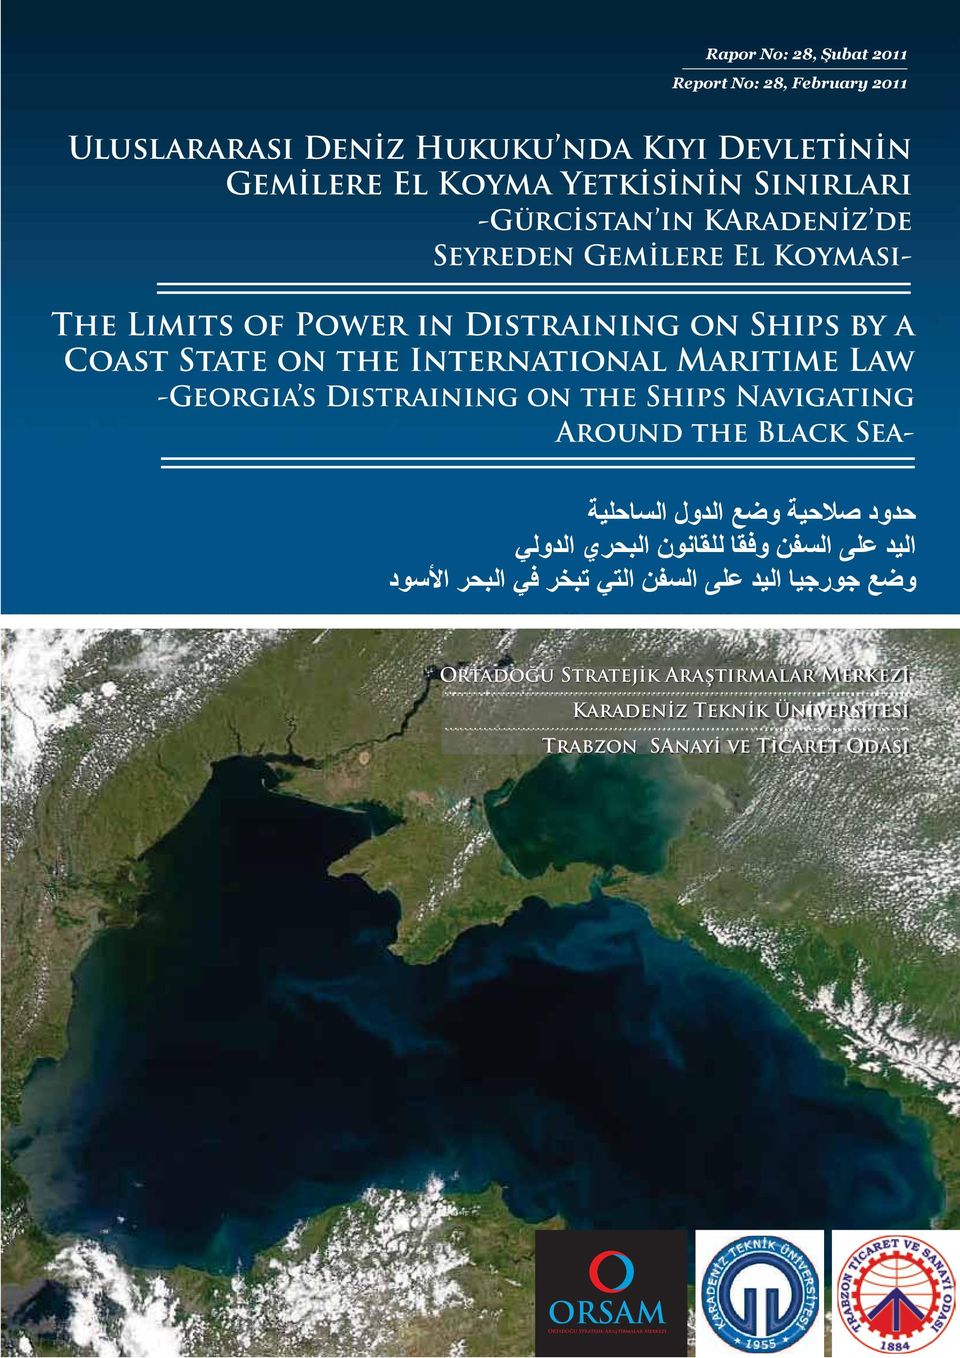 Marıtıme Law -Georgıa s Dıstraınıng on the Shıps Navıgatıng Around the Black Sea- Ortadoğu Stratejik Araştırmalar